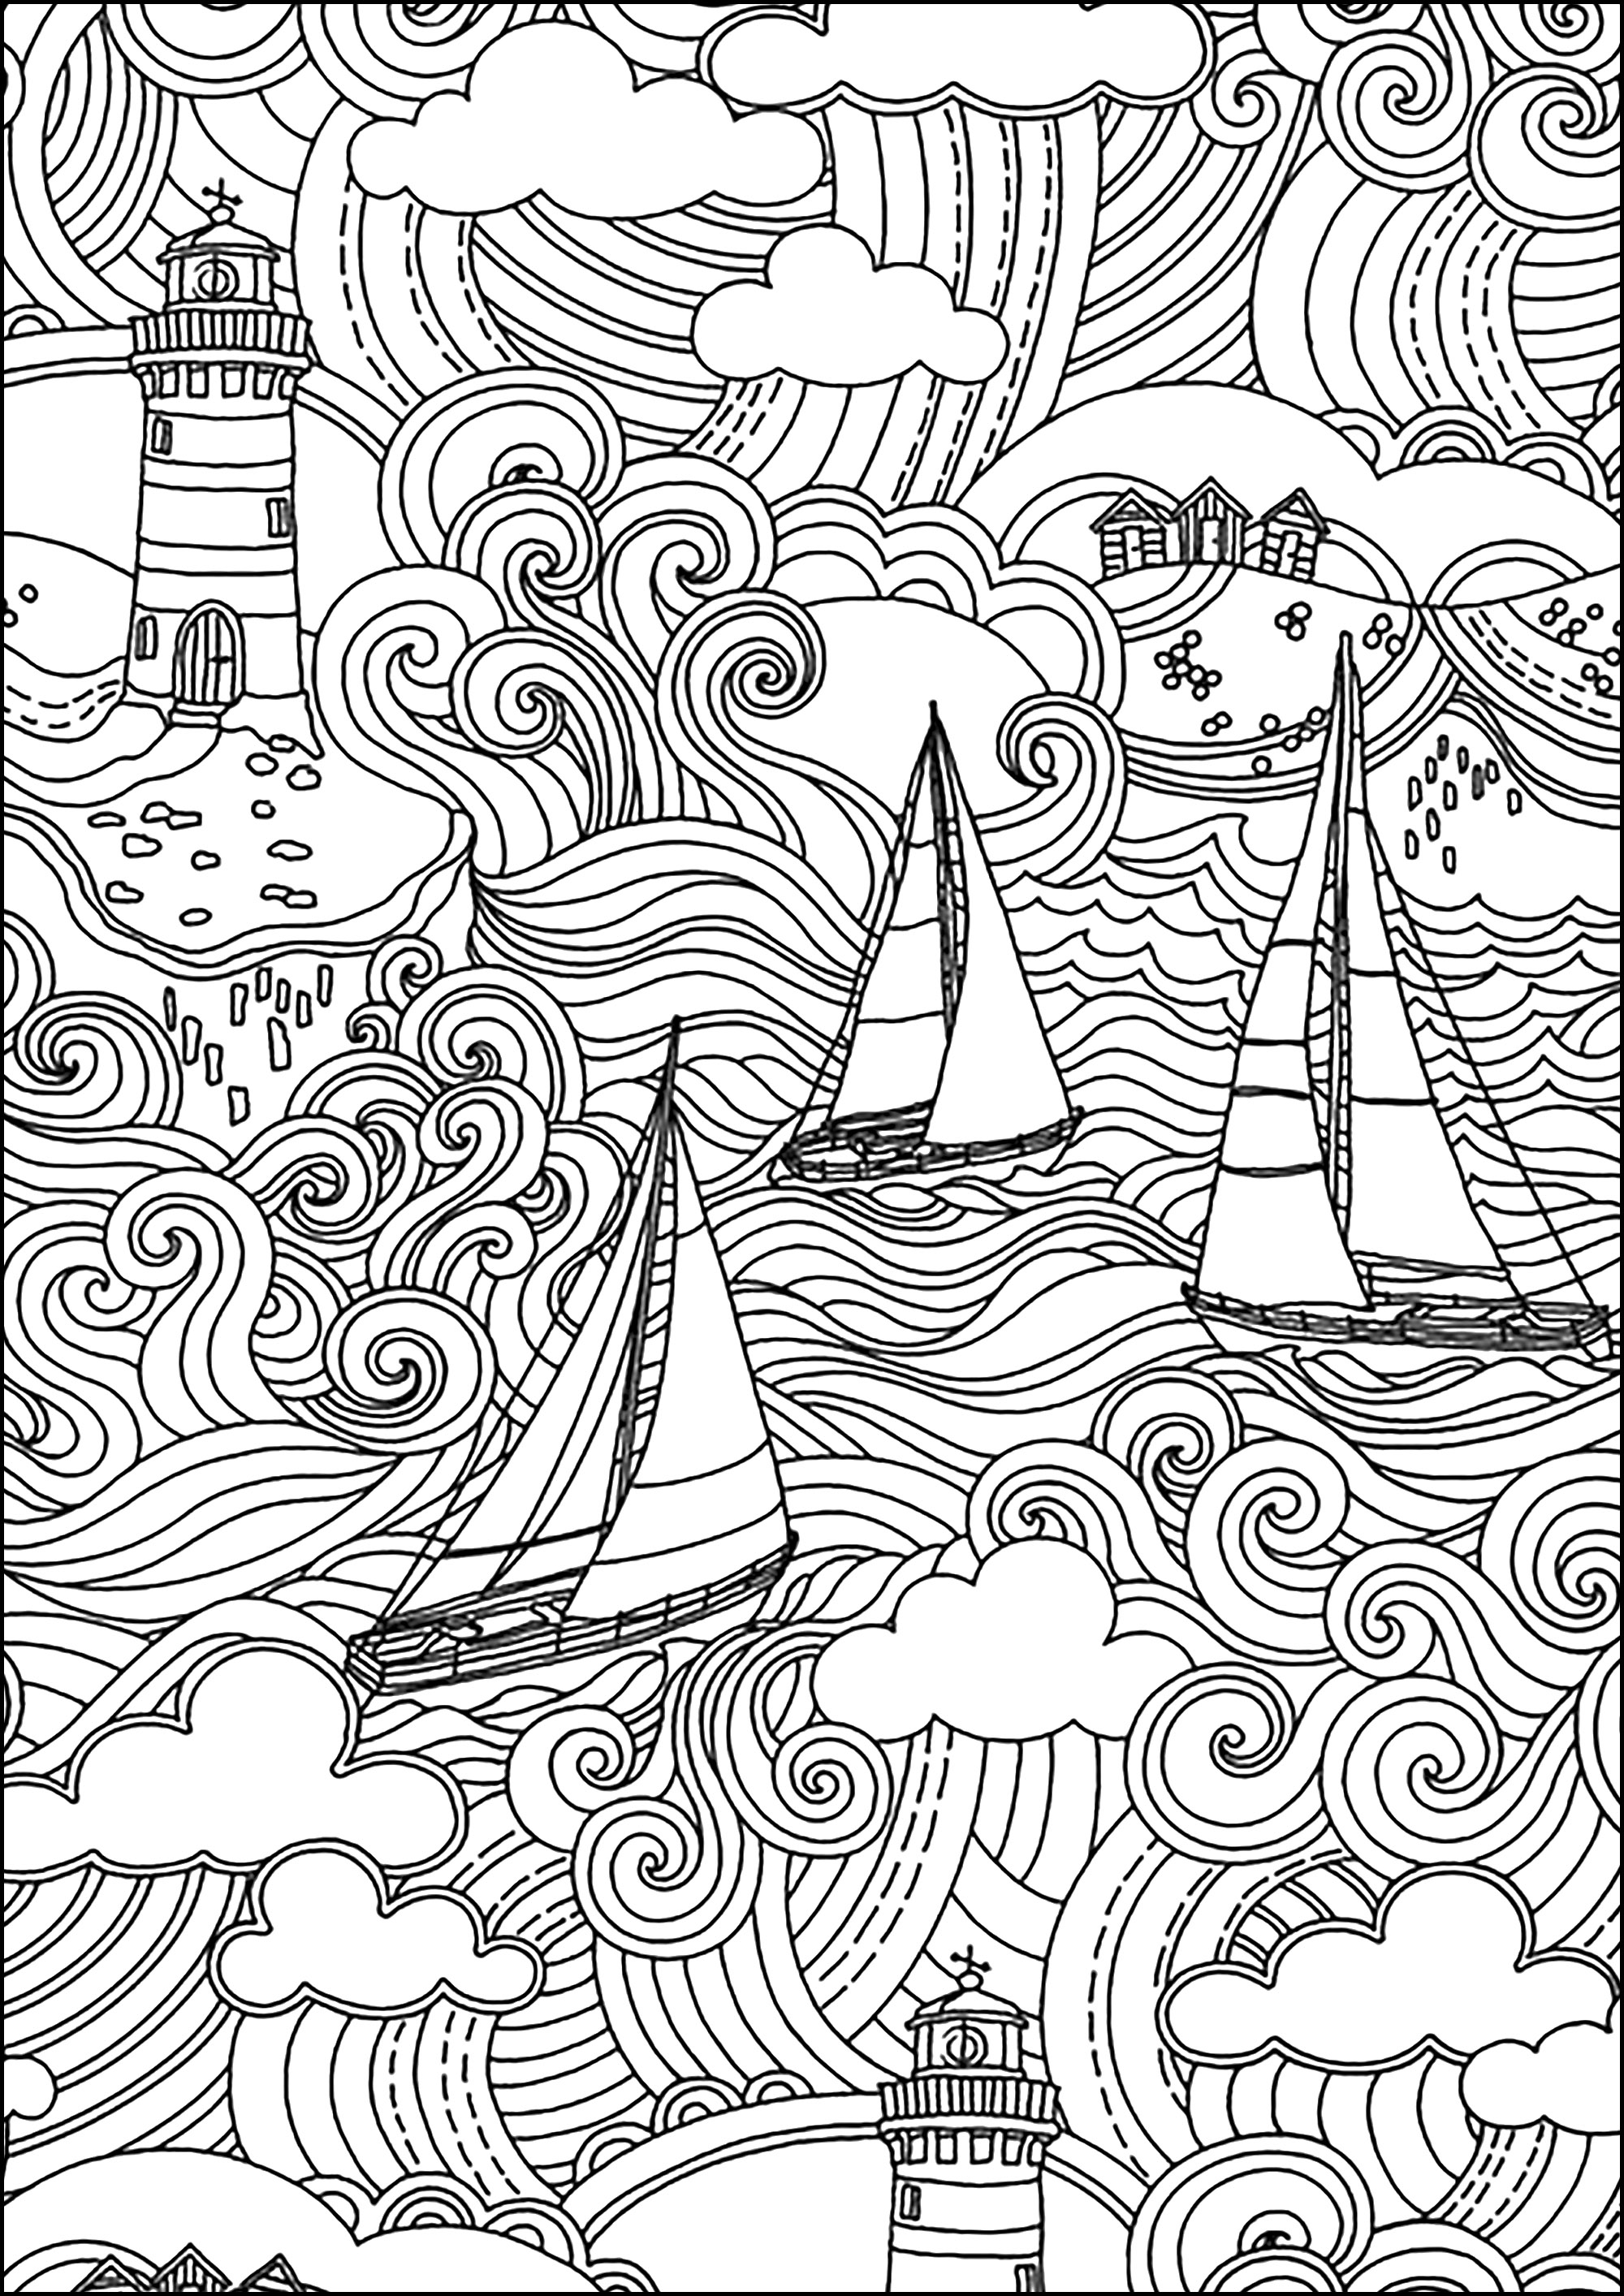 Wunderschöne Meeresszene mit Leuchtturm, Booten, Wellen und bewölktem Himmel